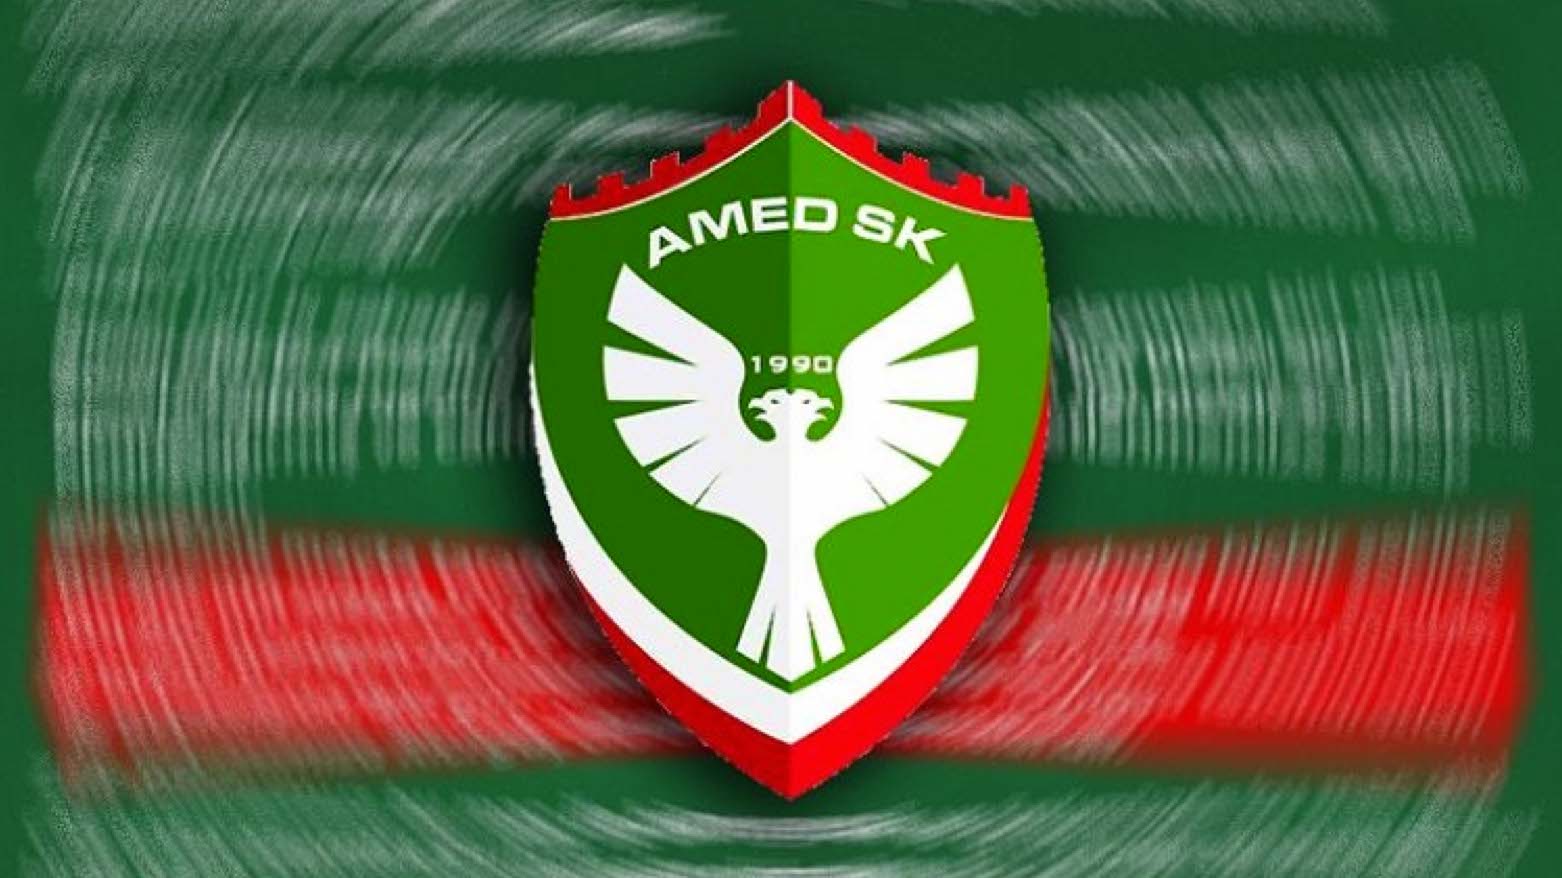 Amedspor logo (Photo: Amedspor)